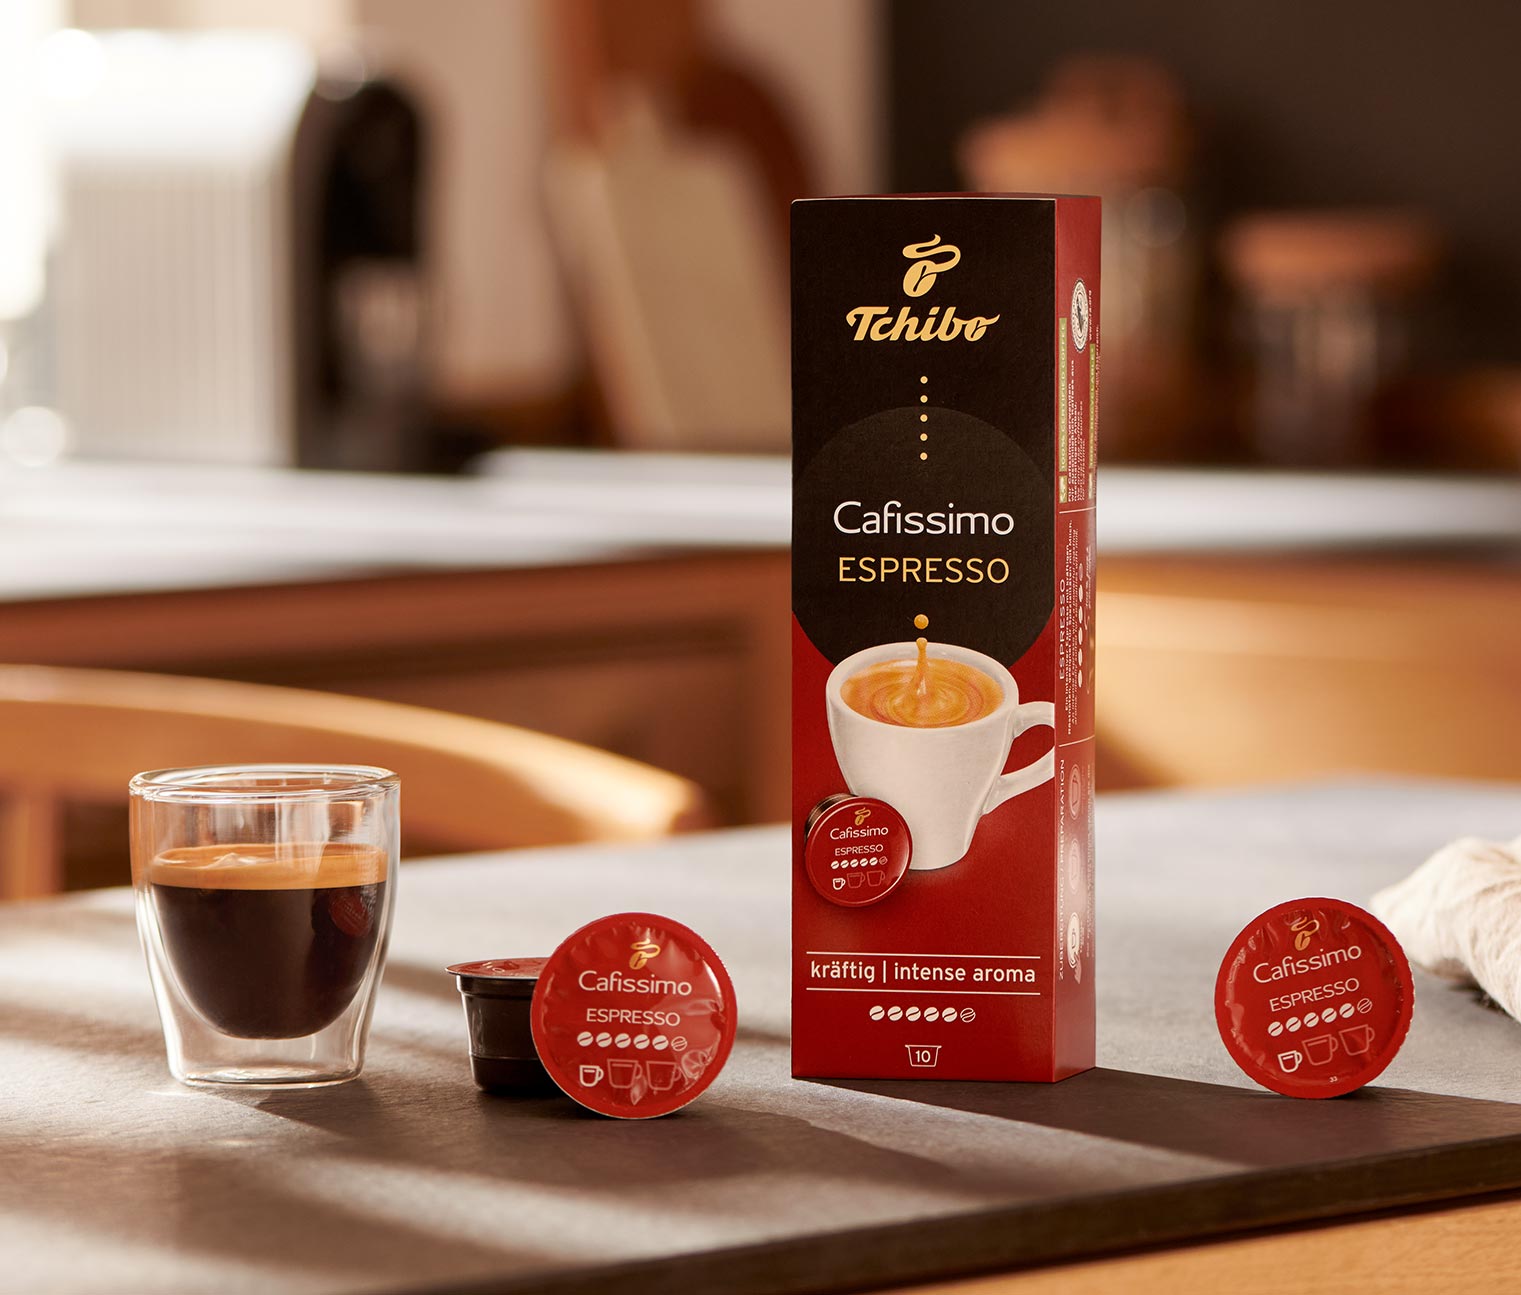 Espresso Intense - 10 db kávékapszula 464521 a Tchibo-nál.